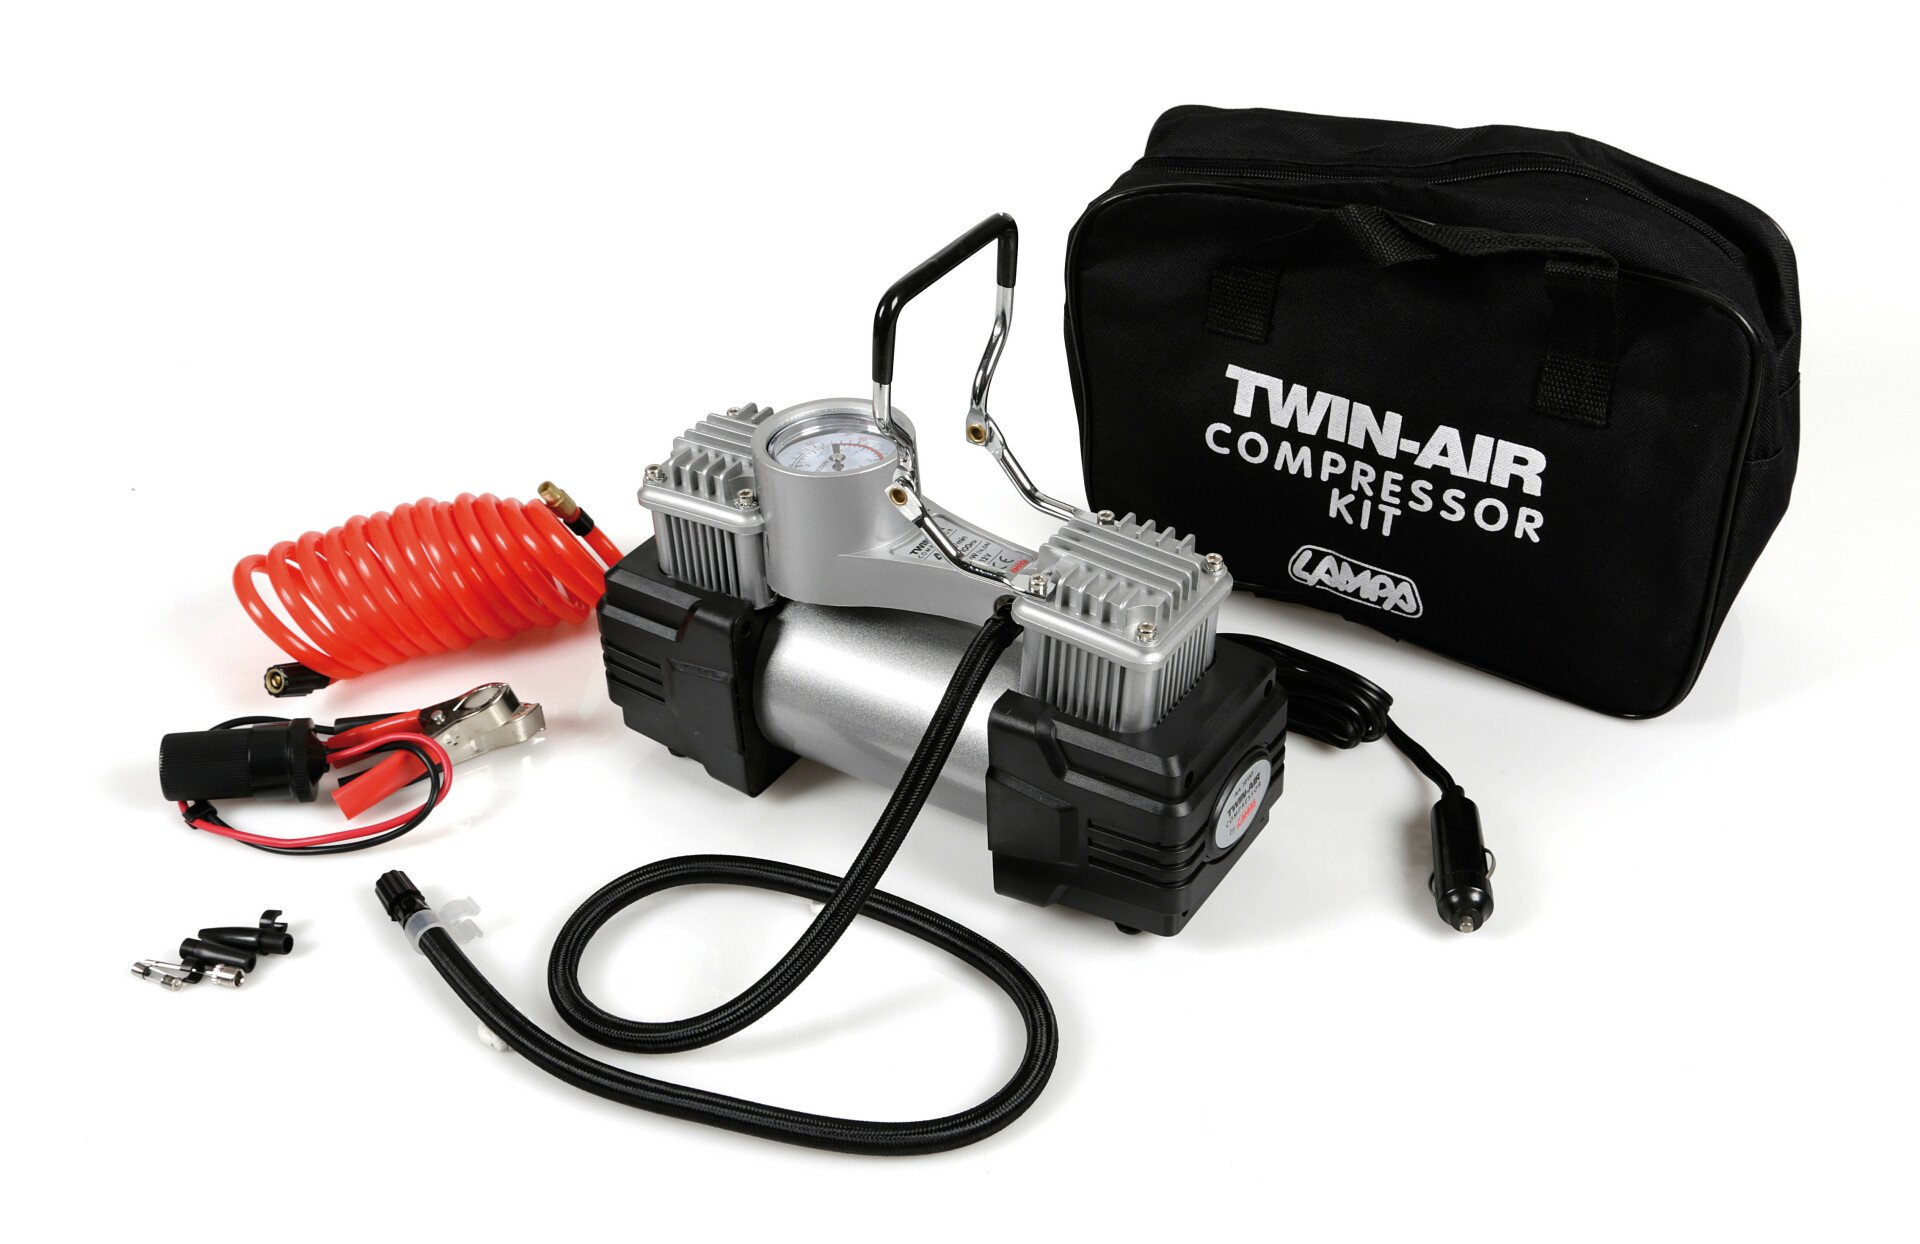 Twin-Air Kit, twin-cylinder compressor, 12V - 200W thumb